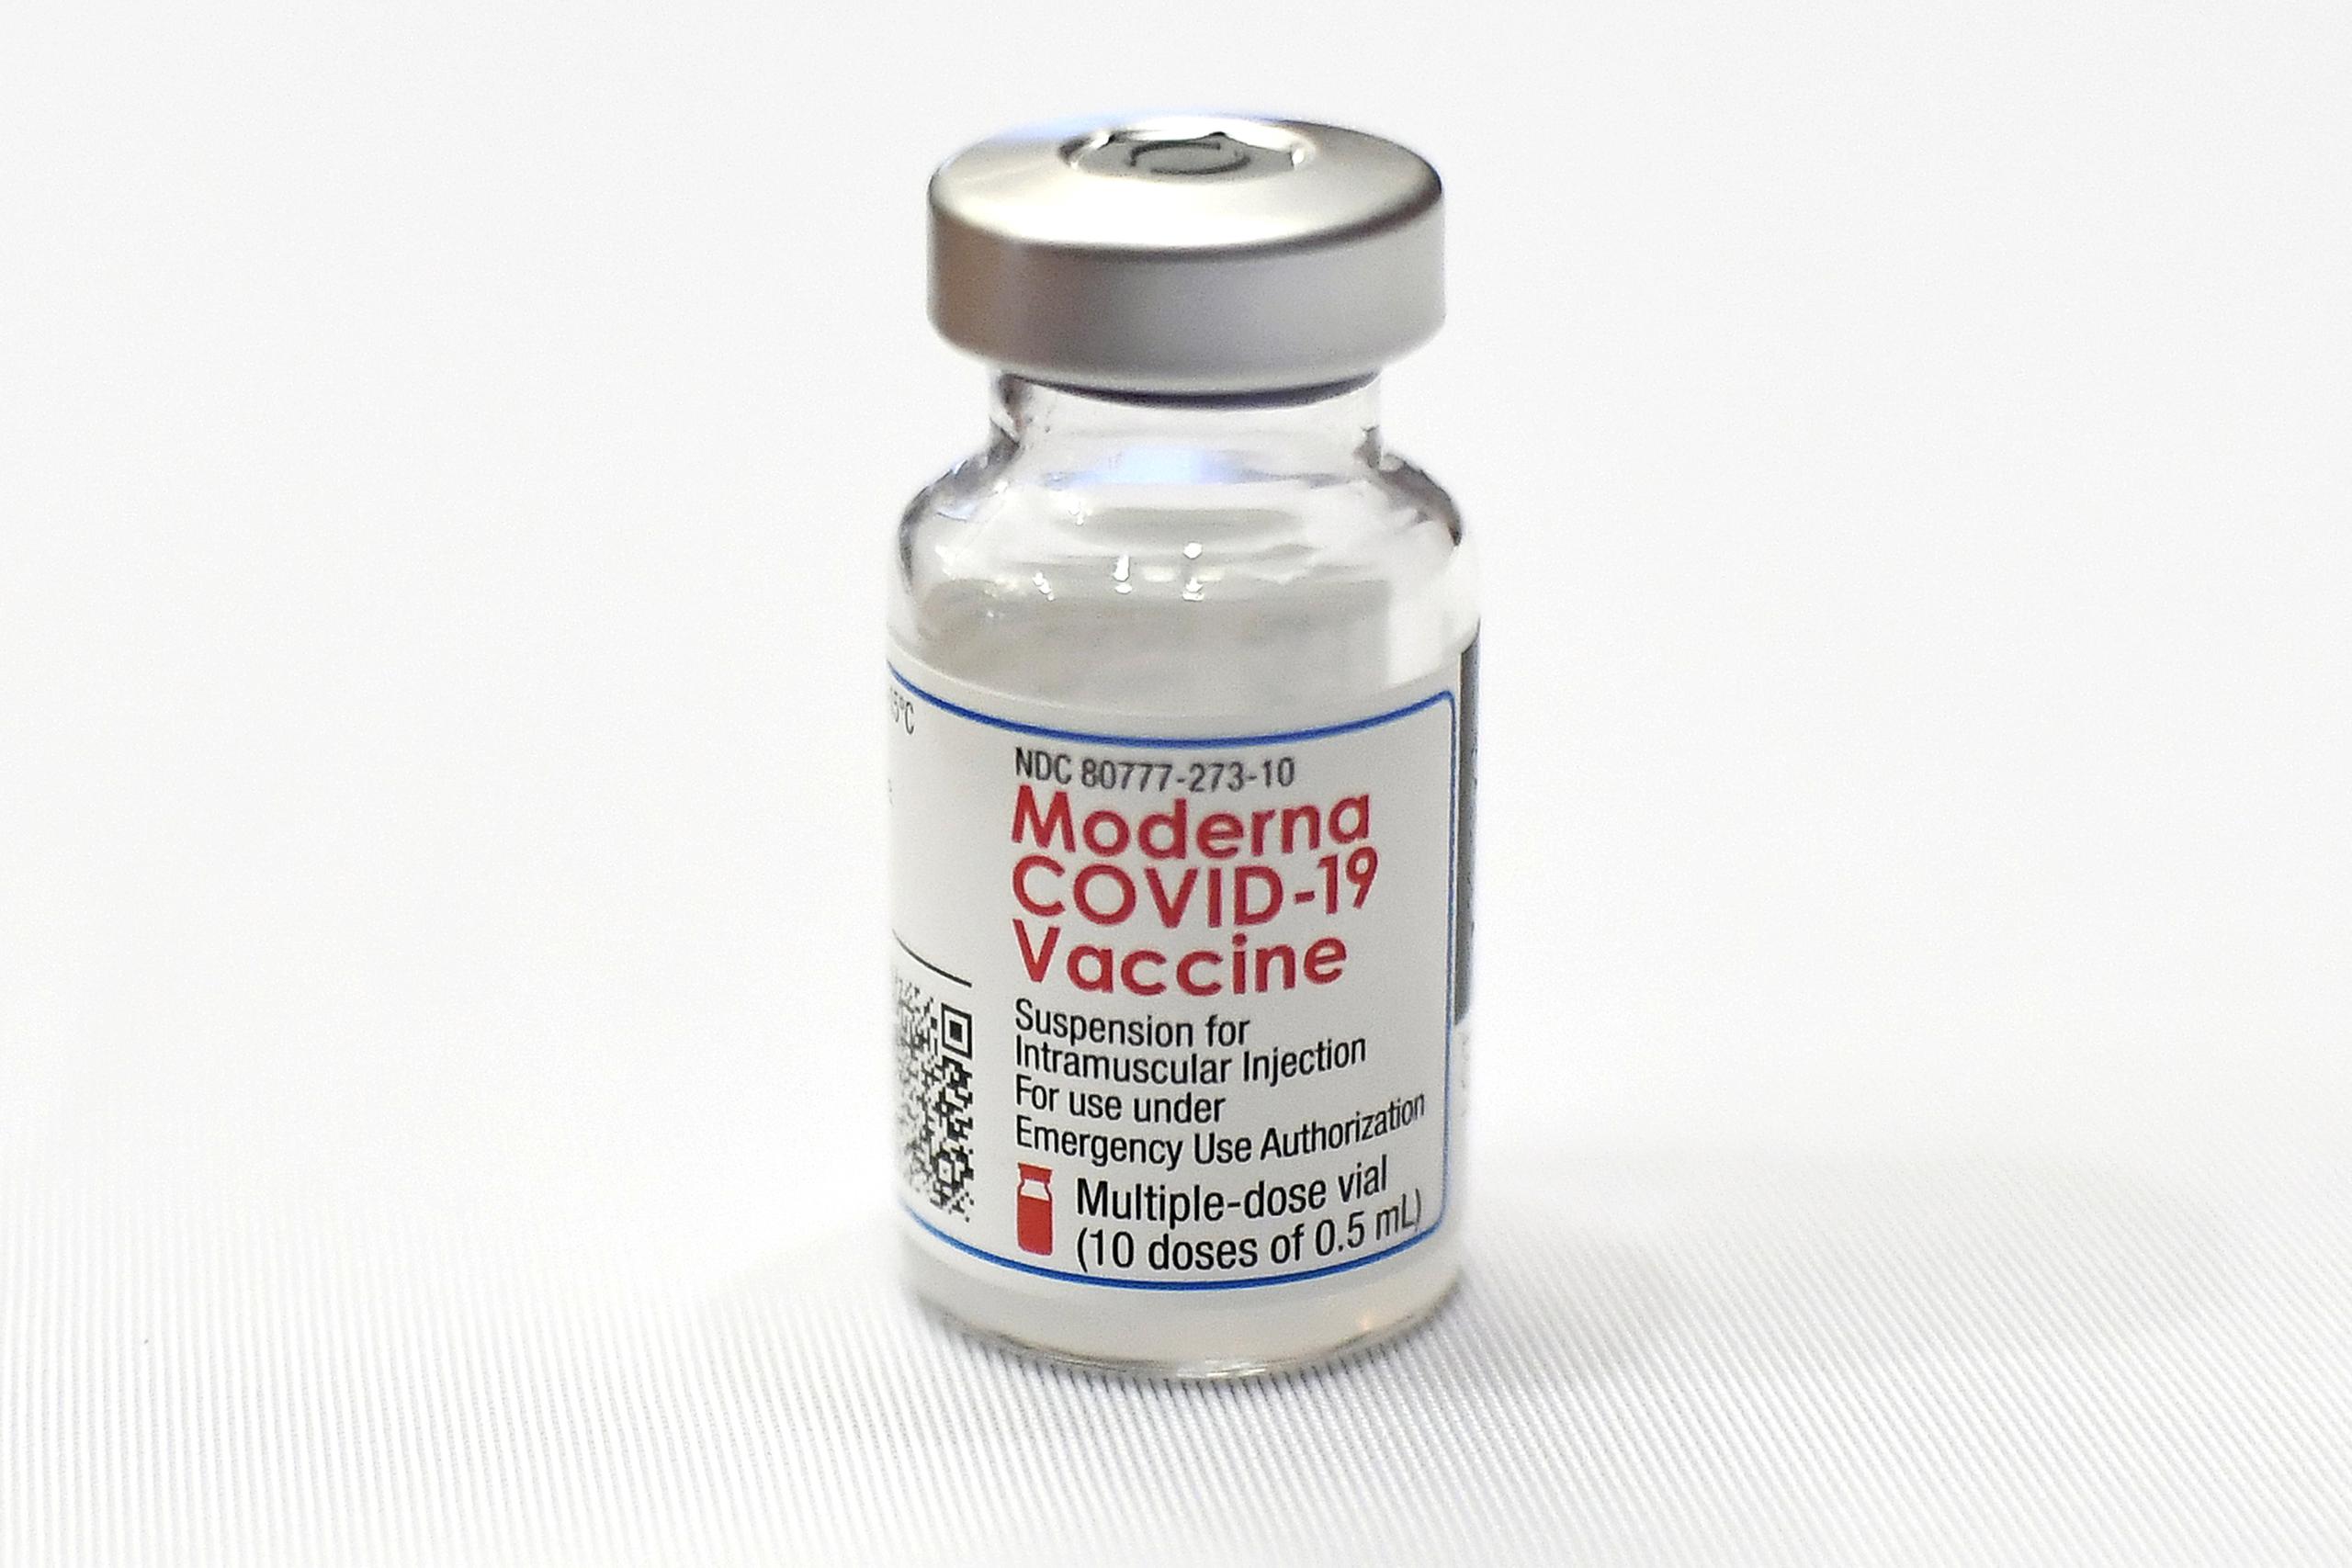 Moderna indicó que en los ensayos clínicos su vacuna ha mostrado una eficacia del 94.1% para prevenir COVID-19 y del 100% a la hora de evitar casos graves.